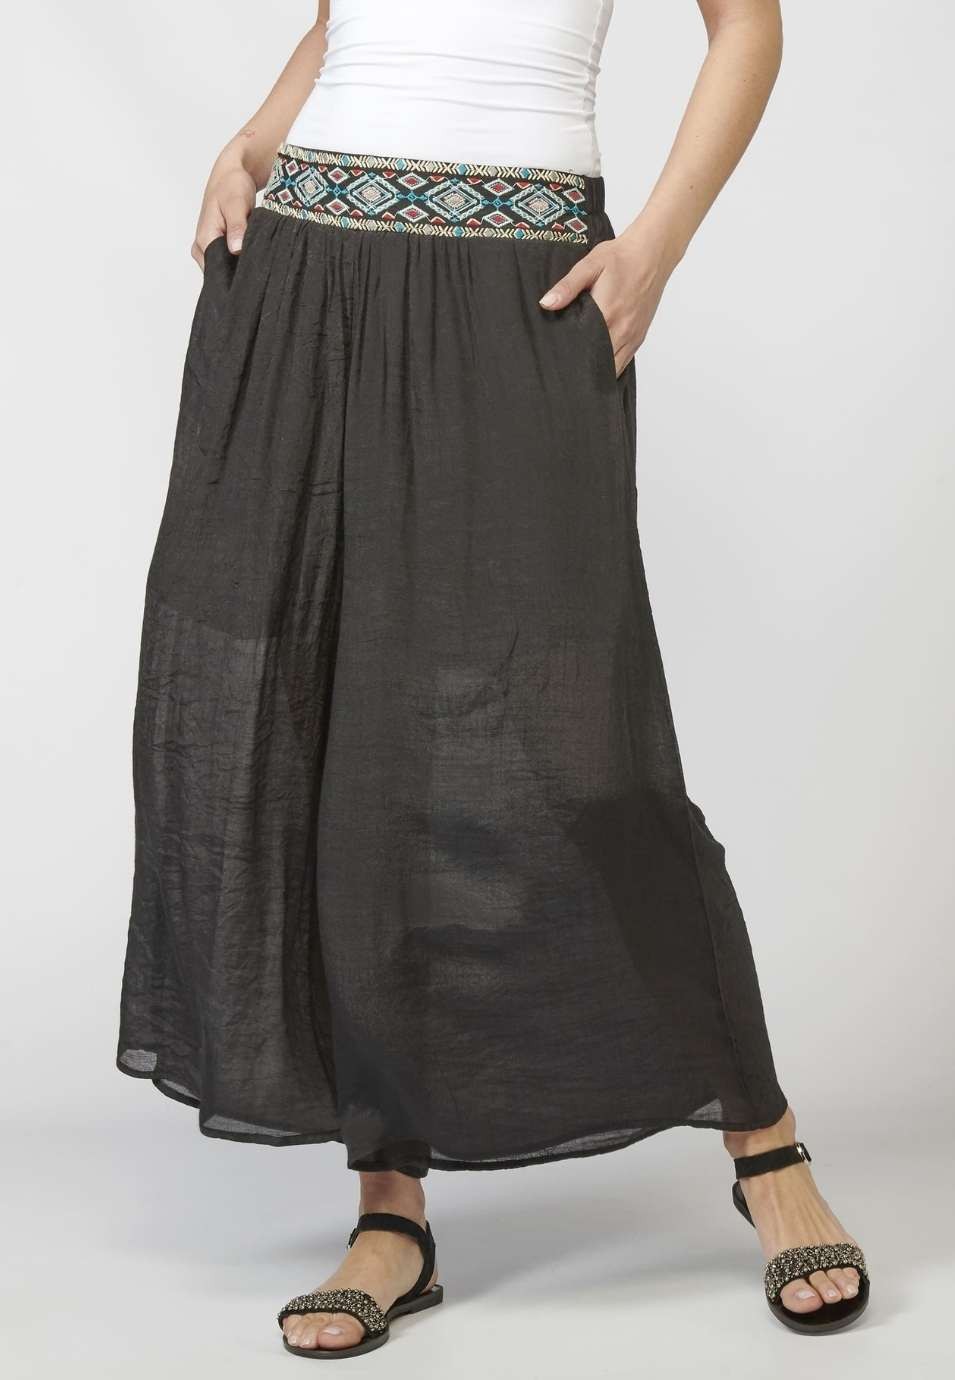 Pantalon long élastique pour femme avec ceinture et détail brodé ethnique de couleur noire 4